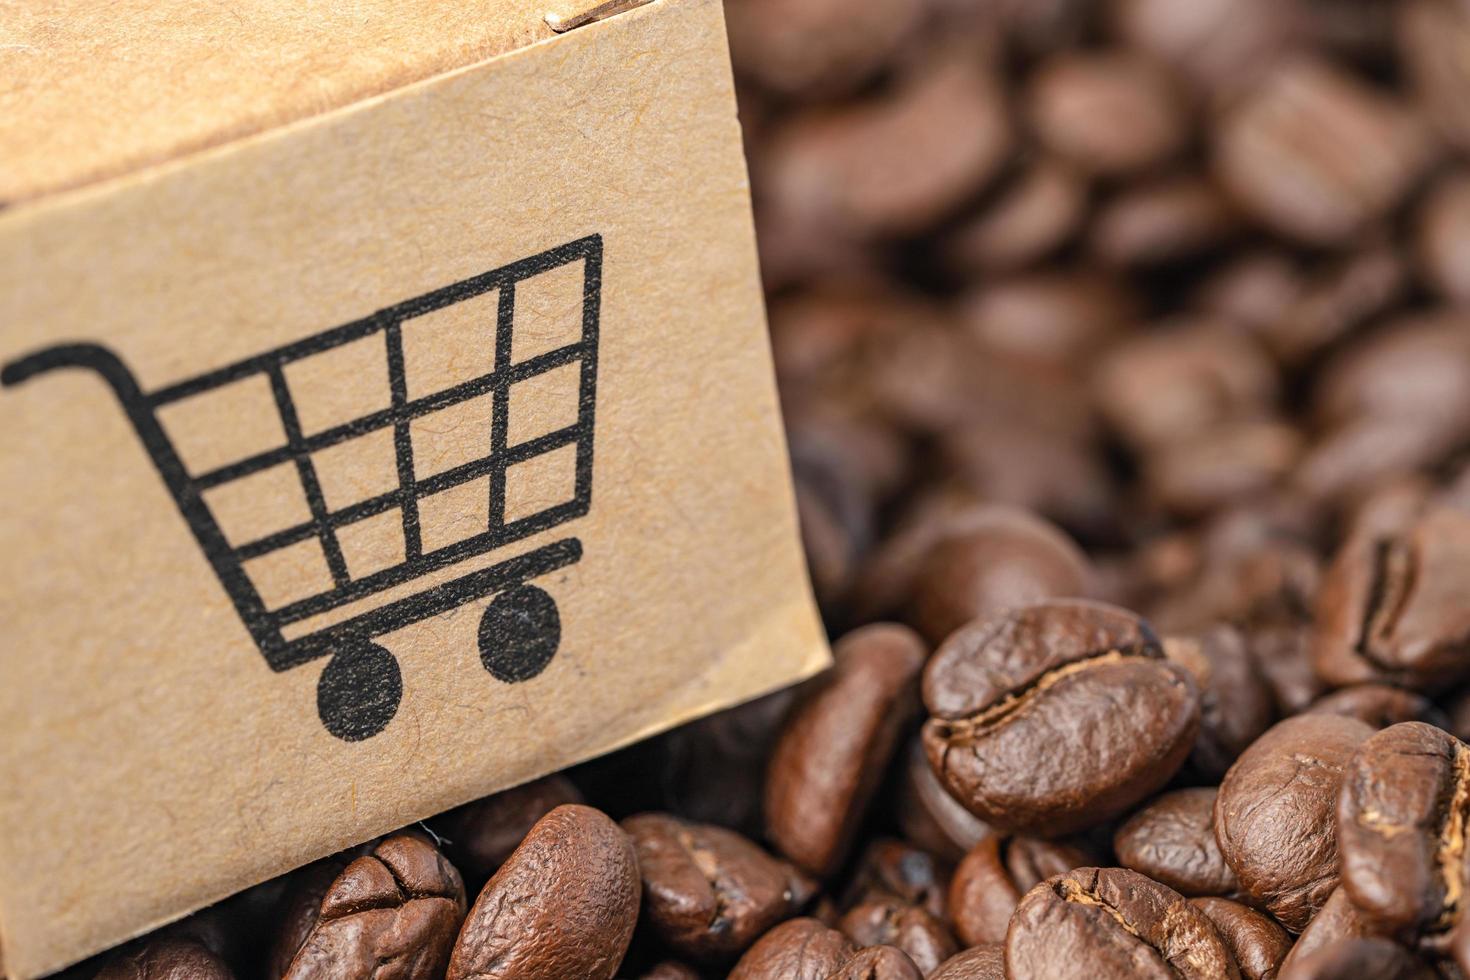 Box mit Einkaufswagen-Logo-Symbol auf Kaffeebohnen, Import-Export-Shopping online oder E-Commerce-Lieferservice-Shop-Produktversand, Handel, Lieferantenkonzept. foto